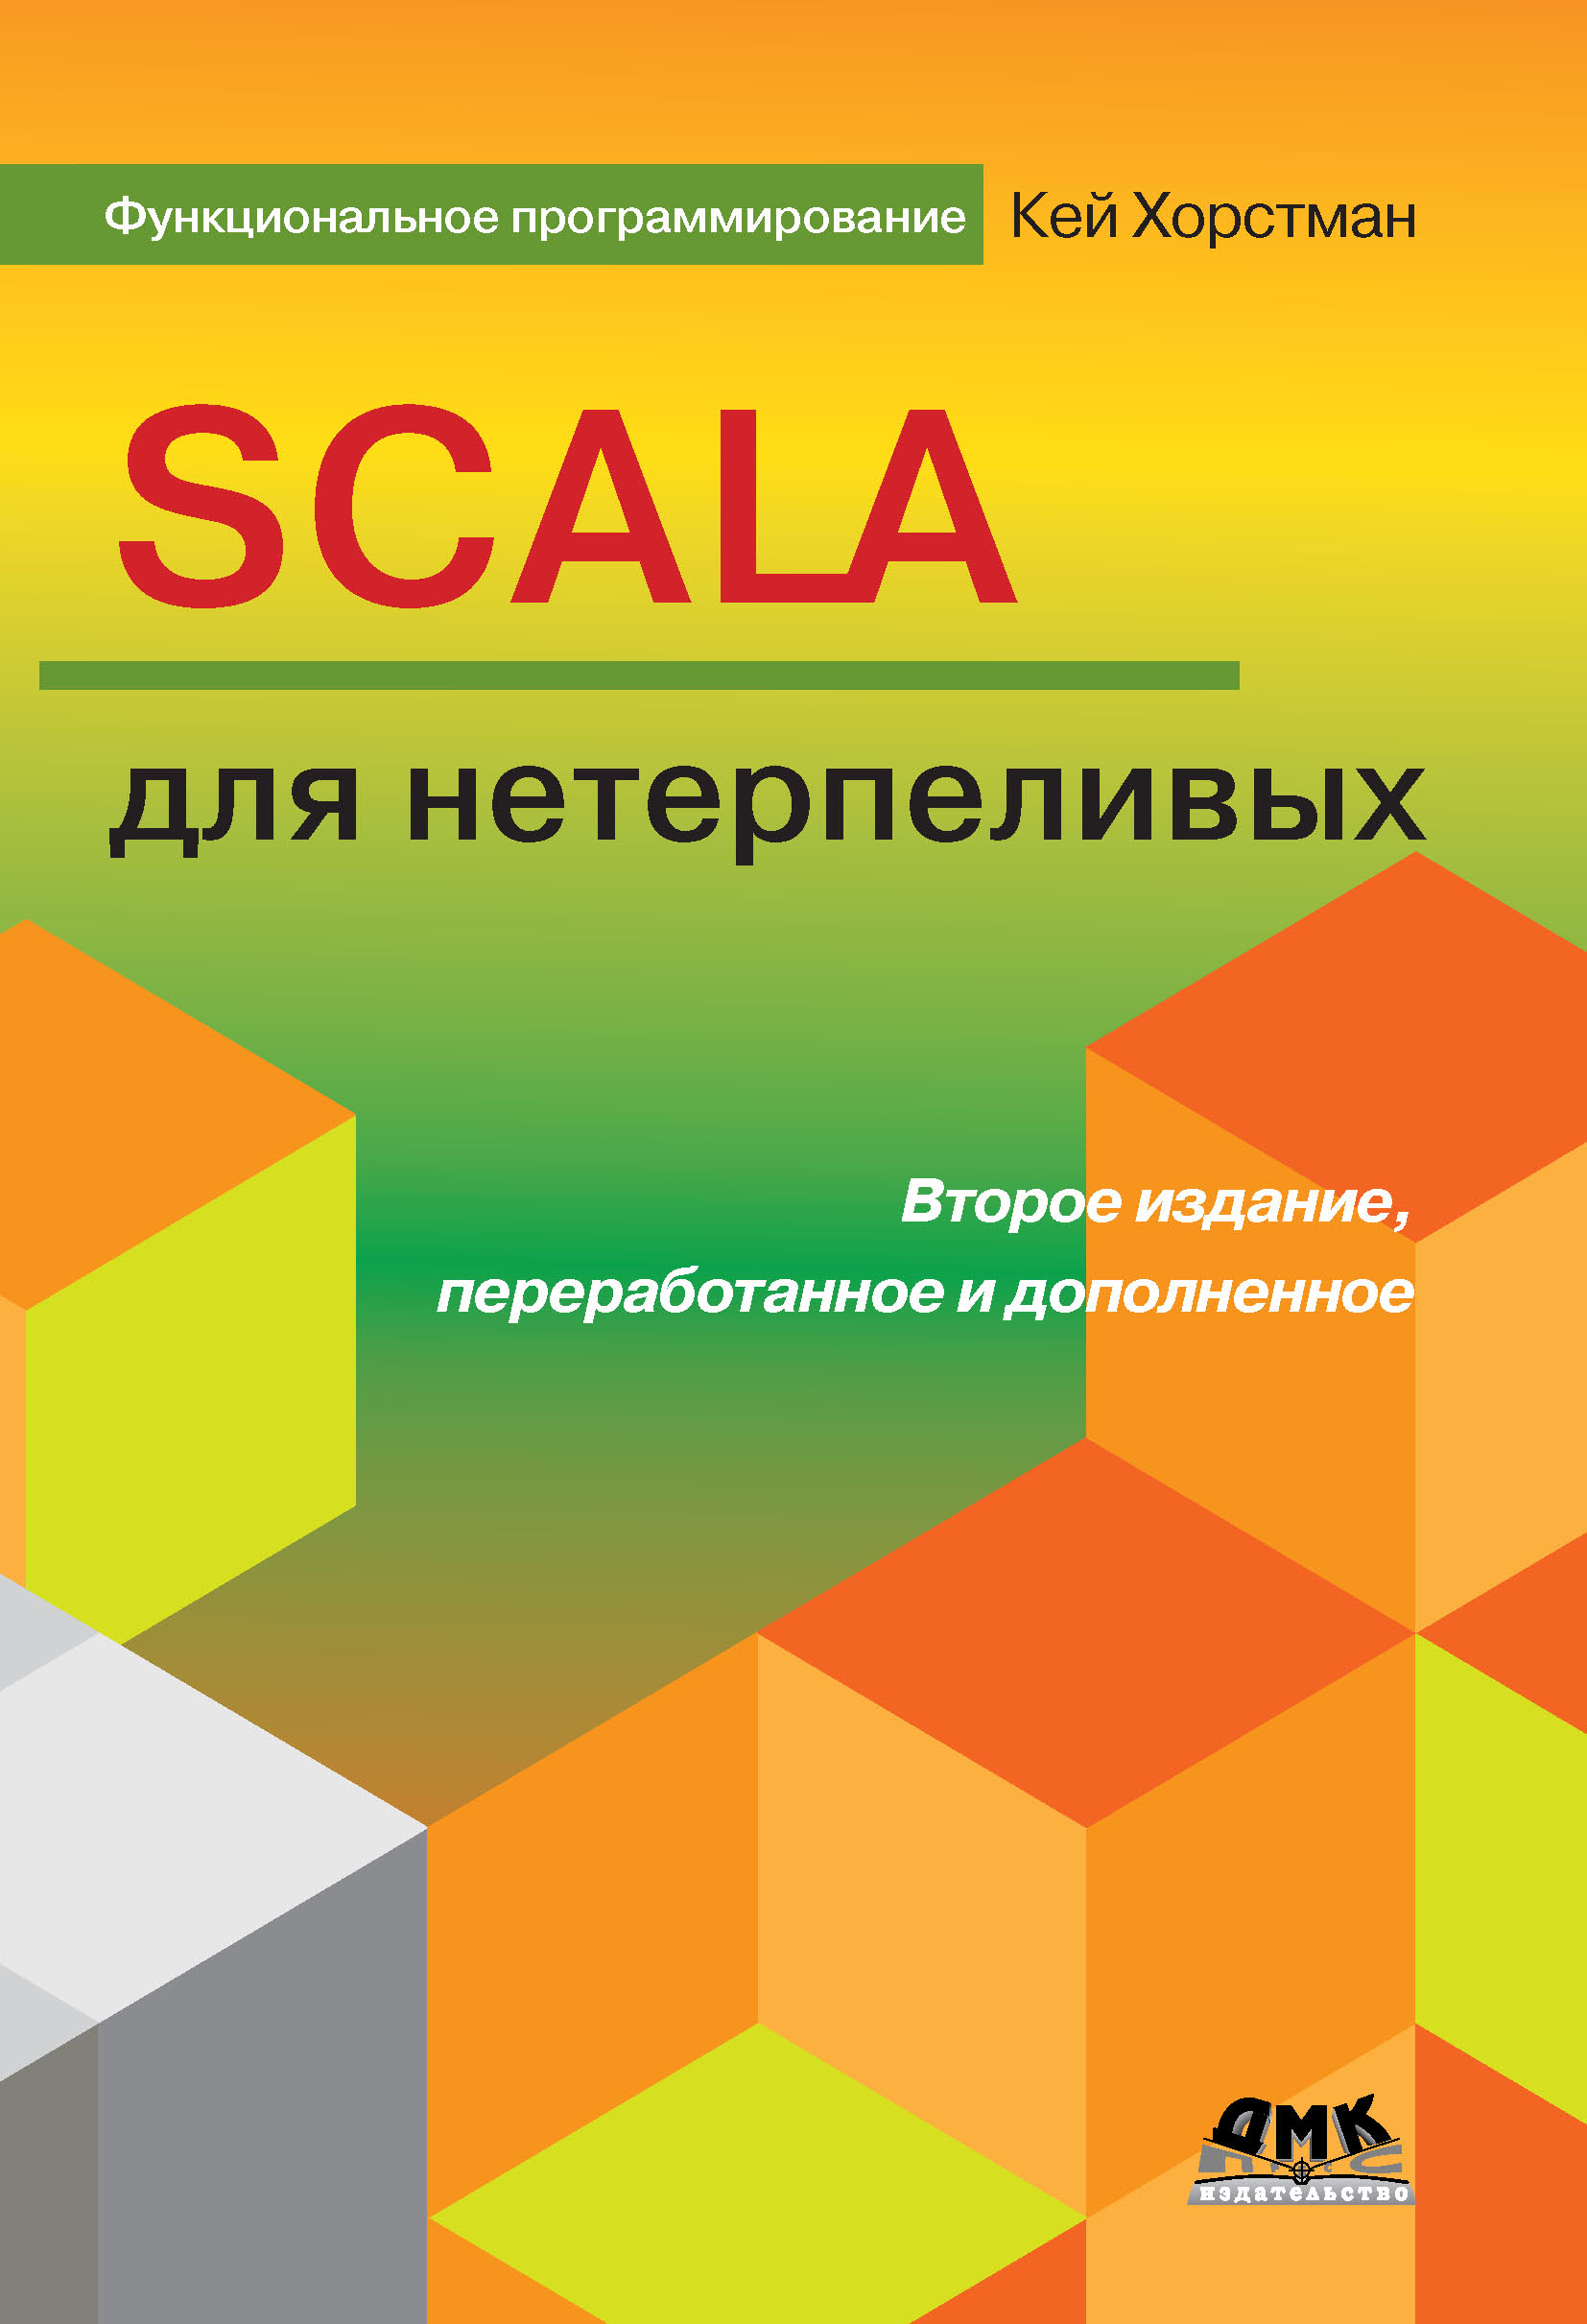 Книга Функциональное программирование Scala для нетерпеливых созданная Кей Хорстманн, Александр Киселев может относится к жанру зарубежная компьютерная литература, программирование. Стоимость электронной книги Scala для нетерпеливых с идентификатором 6089833 составляет 479.00 руб.